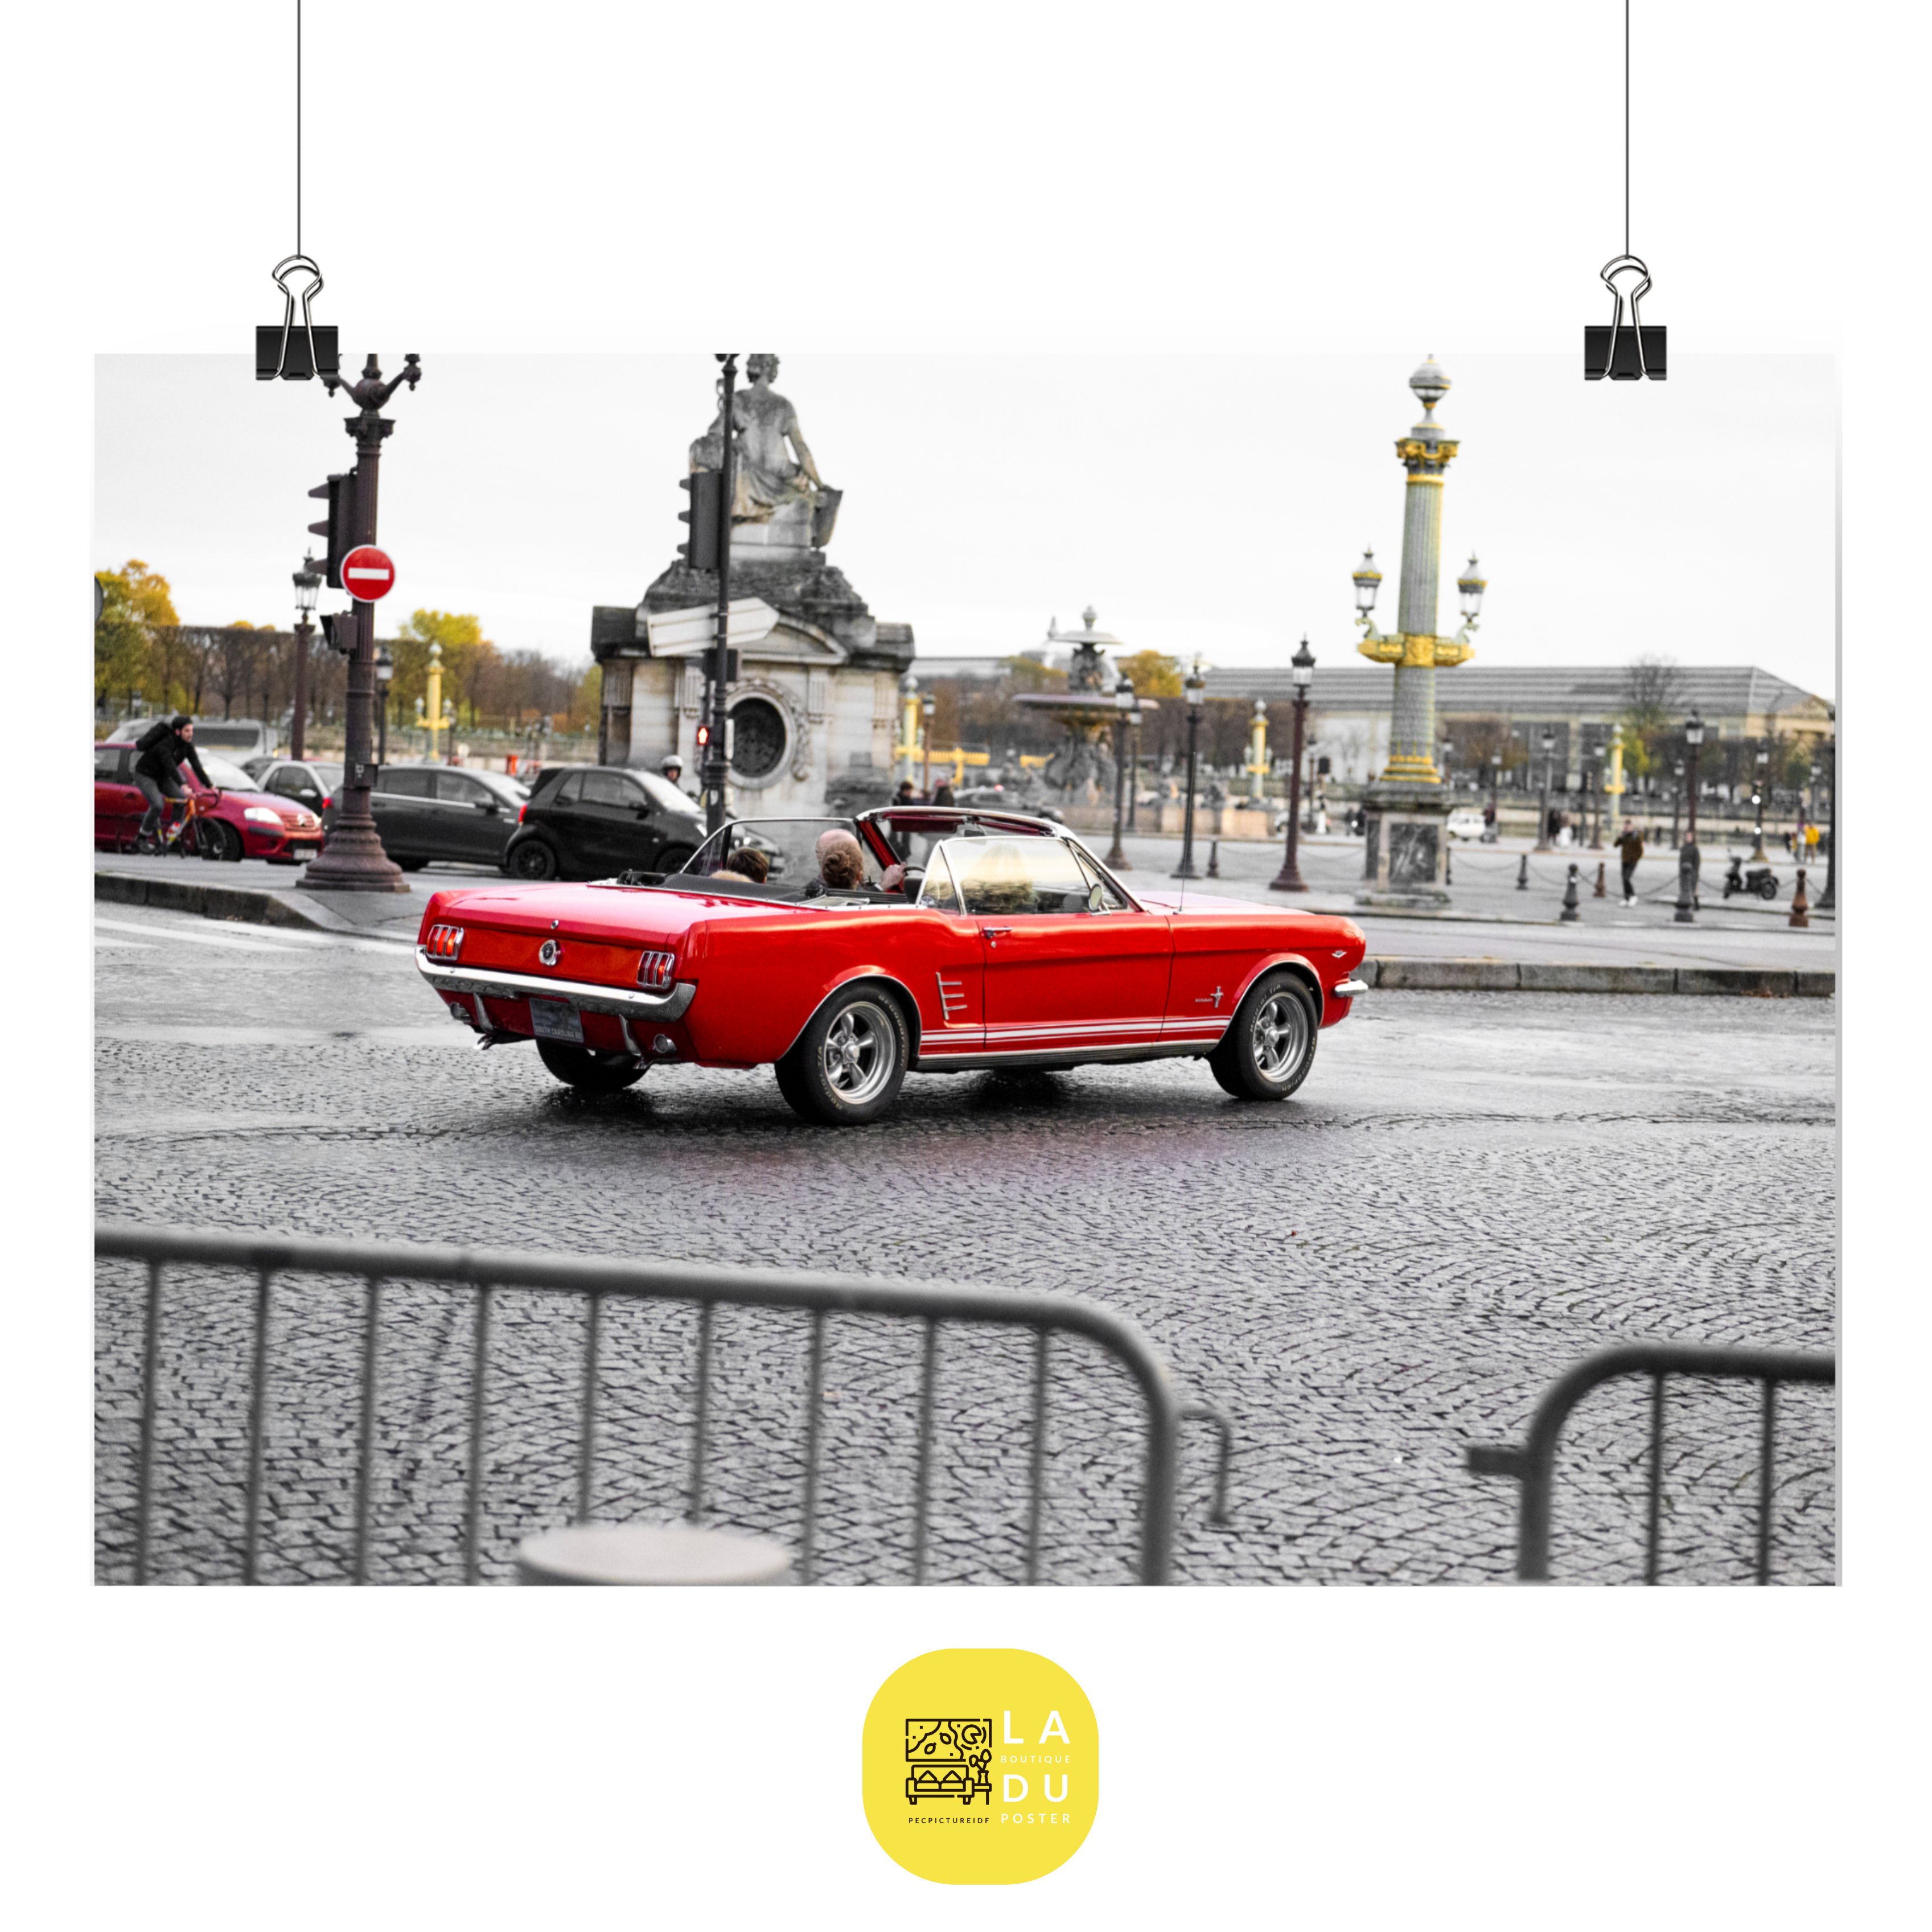 Poster mural - Ford Mustang Rouge Cabriolet 1965 – Photographie de voiture – Poster photo, poster XXL, Photo d’art, photographie murale et des posters muraux des photographies de rue unique au monde. La boutique de posters créée par un Photographe français.